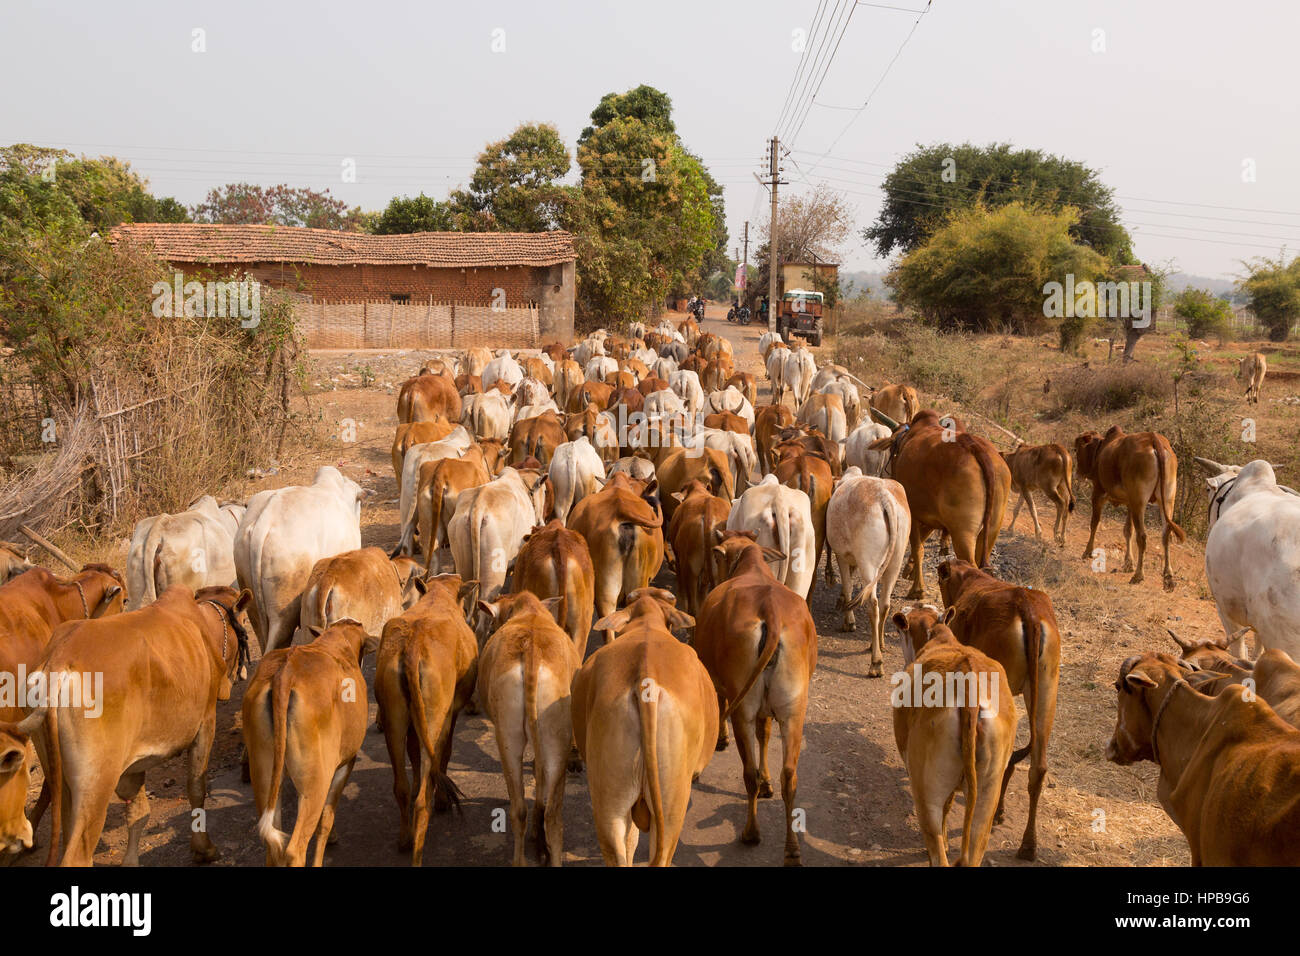 Indien Rinder; Indien Dorf Szene; Eine Herde von Kühen auf der Straße in einem indischen Dorf, Maharashtra Staat, Indien, Asien Stockfoto